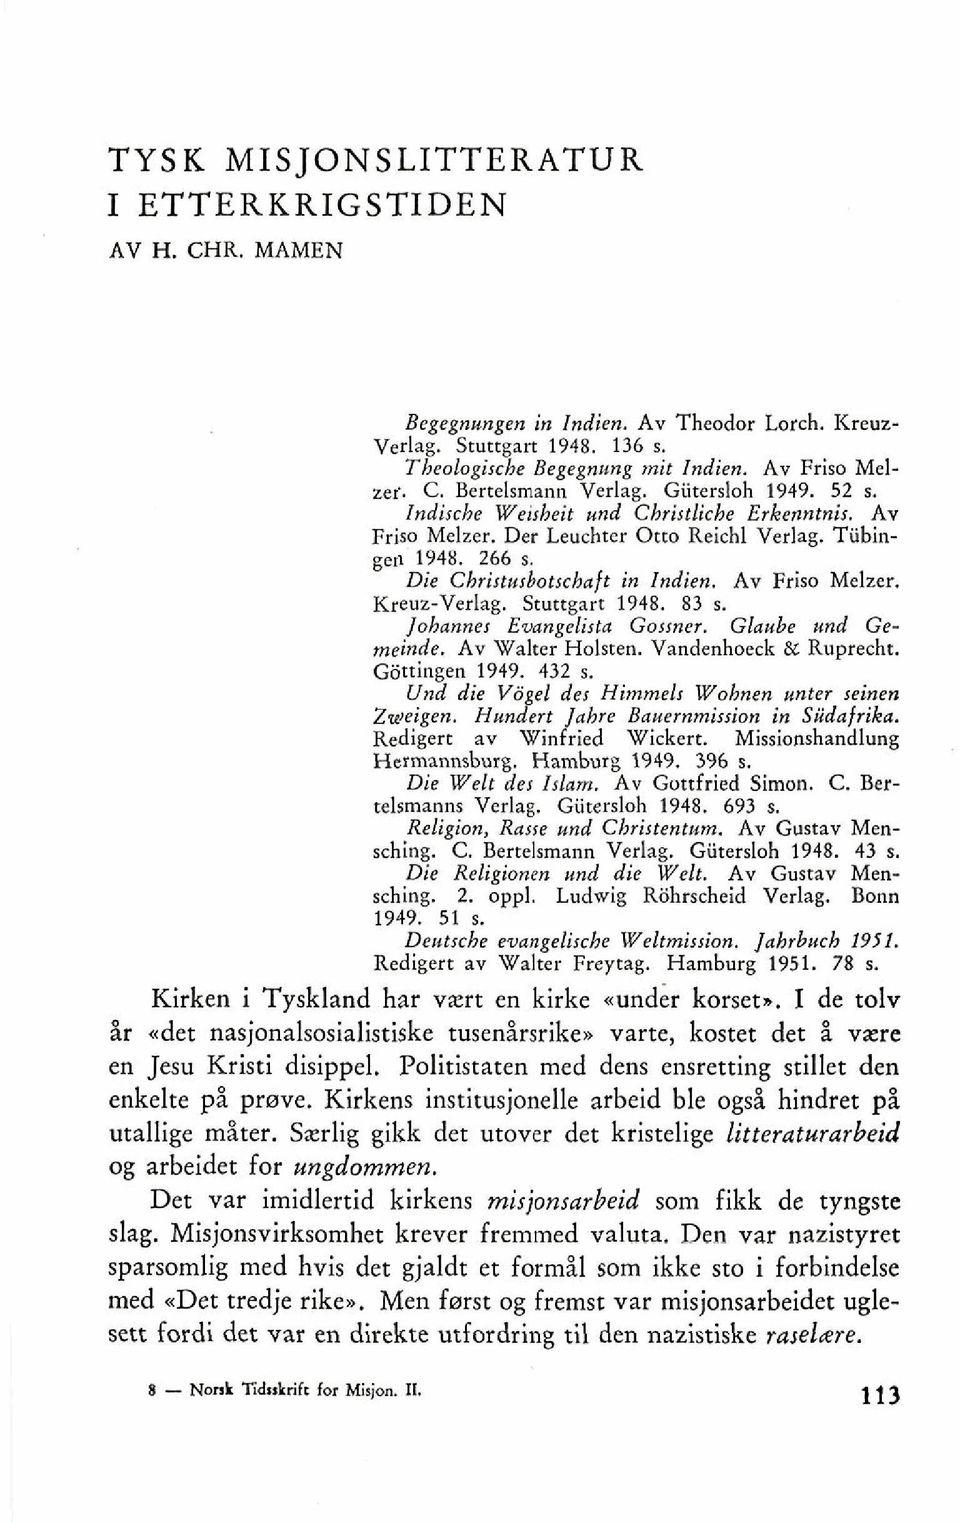 Sruttgart 1948. 83 s. Johannes Ewngelirta Gamer. Glaube und Gemeinde. Av Walter Holrten. Vandenhoeck & Ru~recht. Gatingen 1949. 432 s. Und die V6gel der Himmelr Wohnen unter seinen Zweigen.